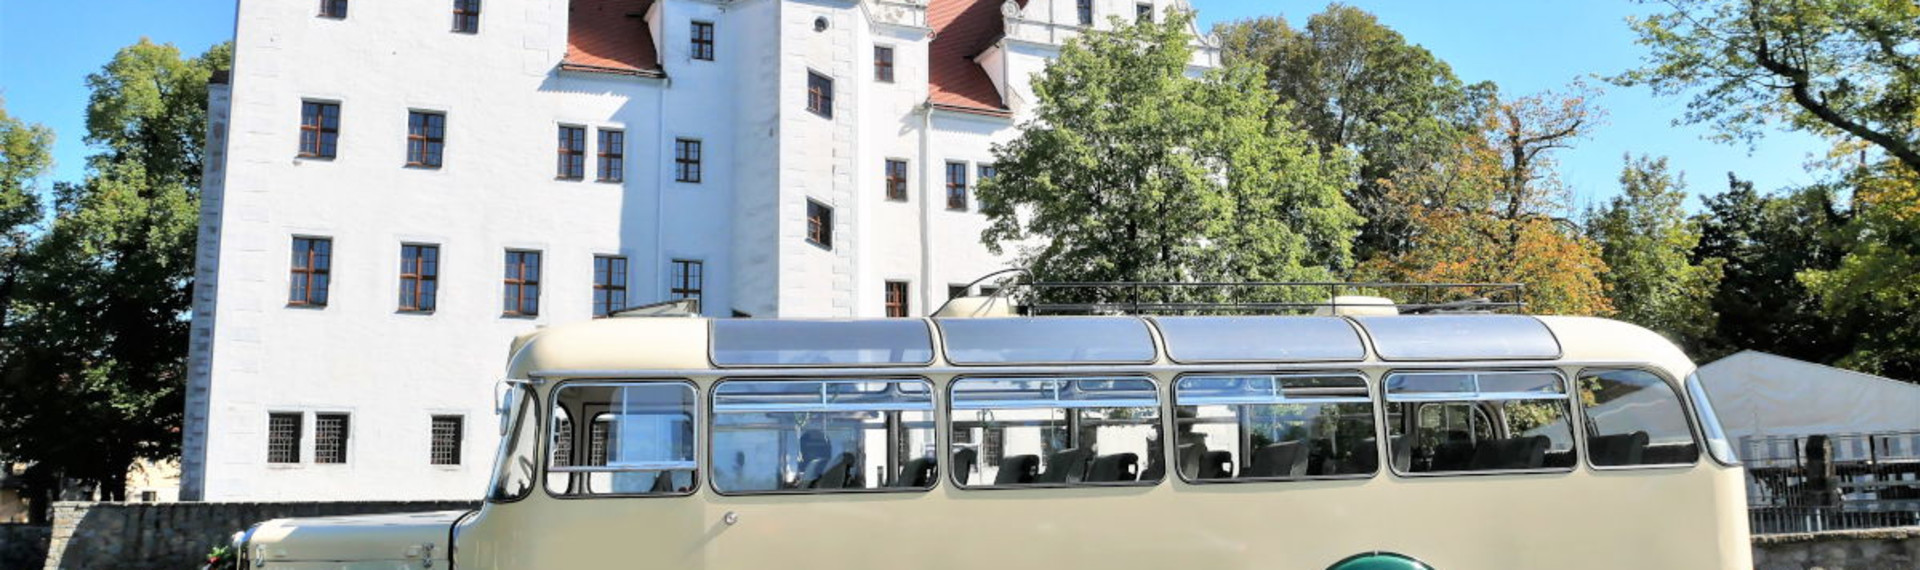 Oldtimer Bus Dresden | Jetzt mit Pissup Reisen buchen!